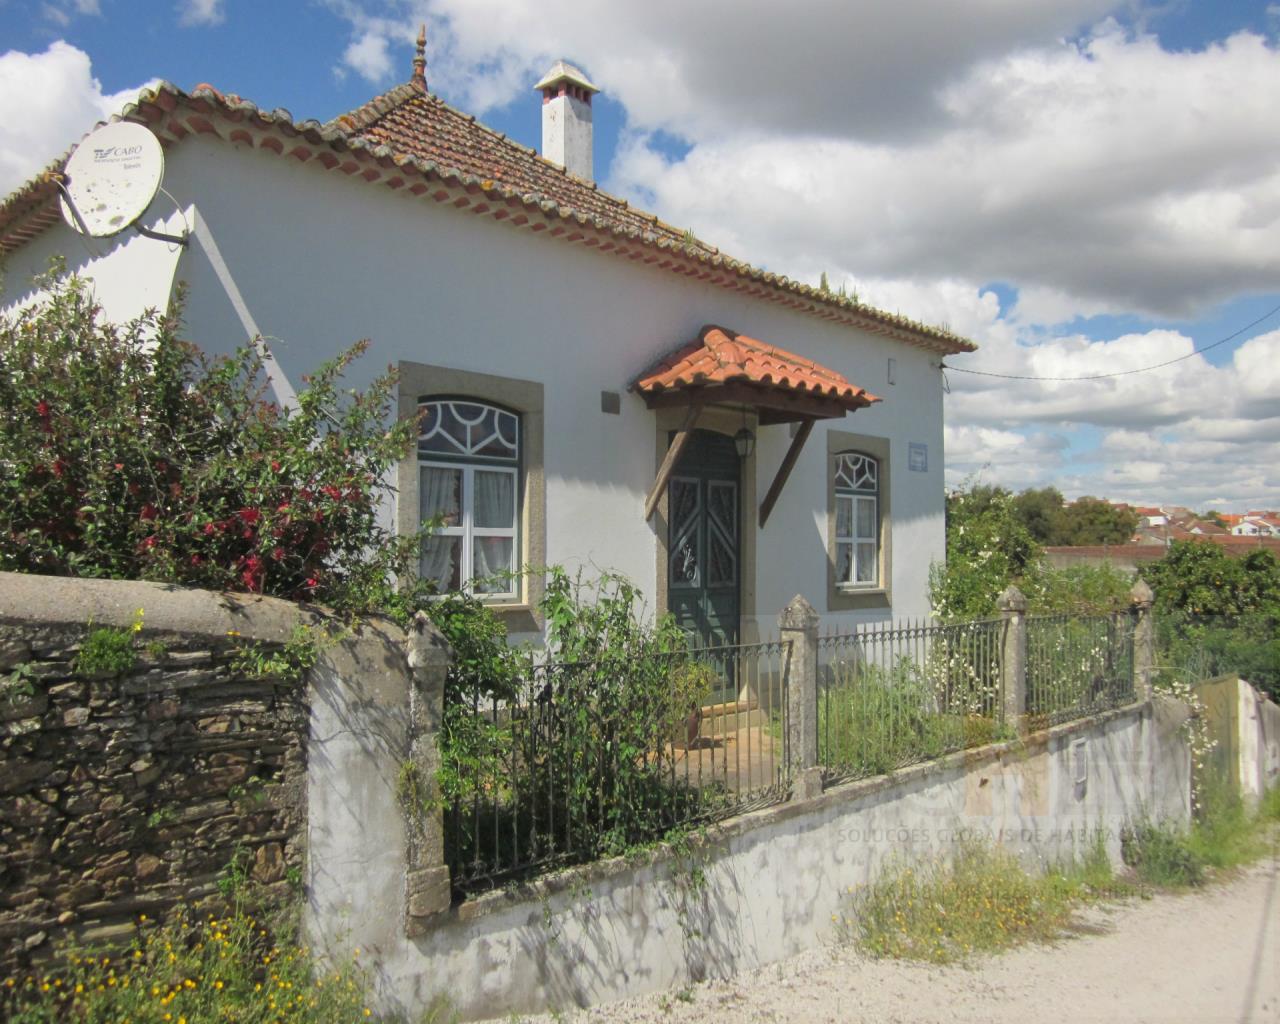 Venda Moradia Rustica com garagem e terreno Cebolais de Cima Castelo Branco, Castelo Branco, Castelo Branco